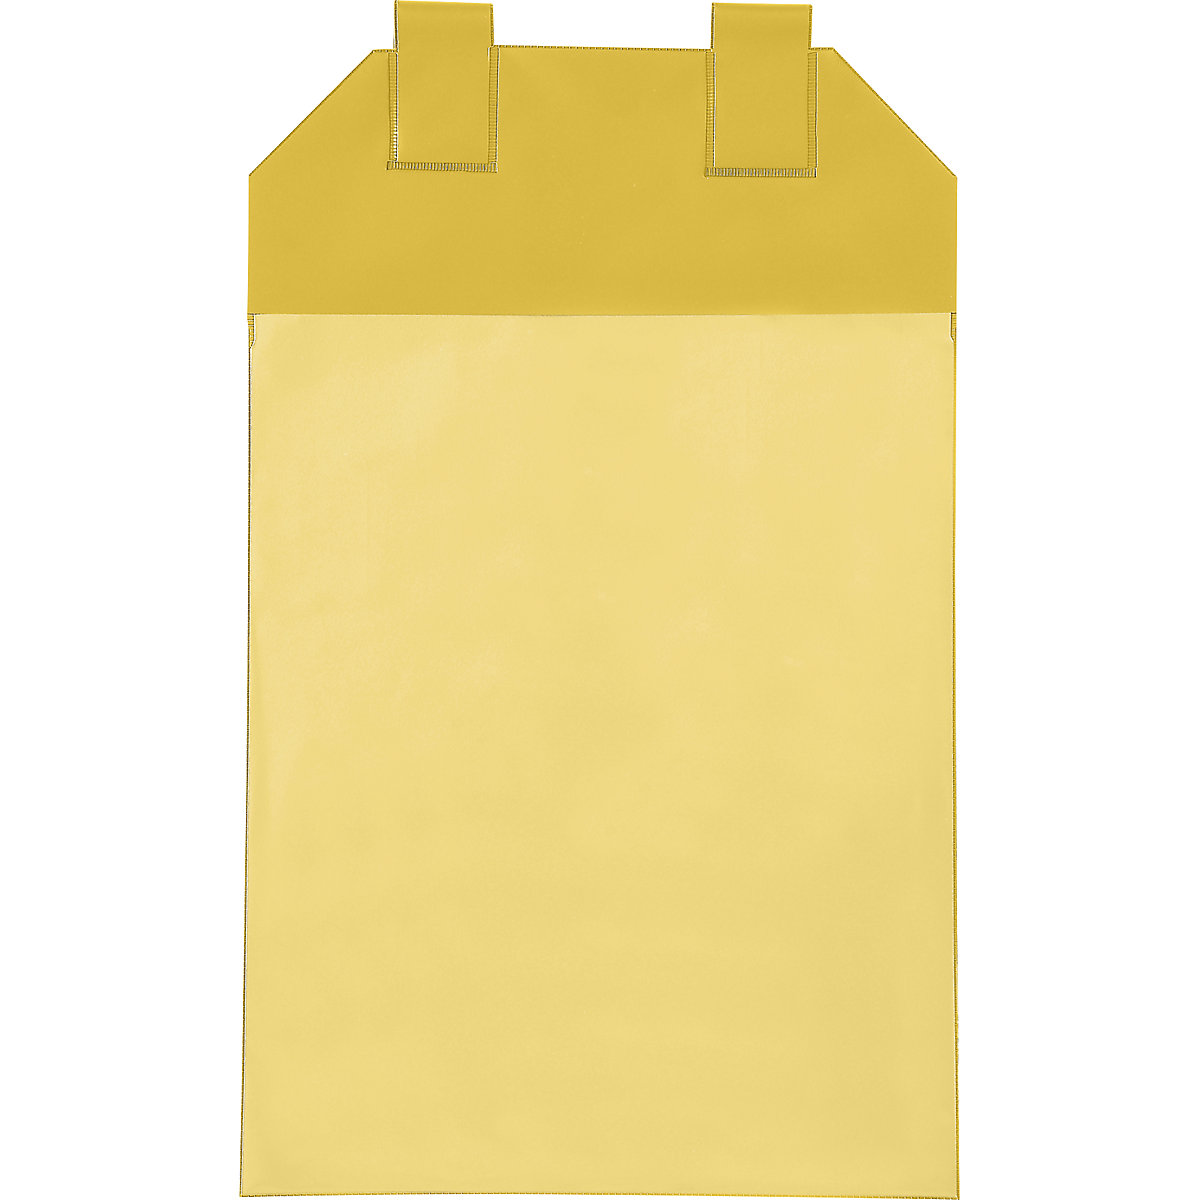 Gitterboxtaschen, VE 50 Stk, für Papierformat DIN A4, gelb-5